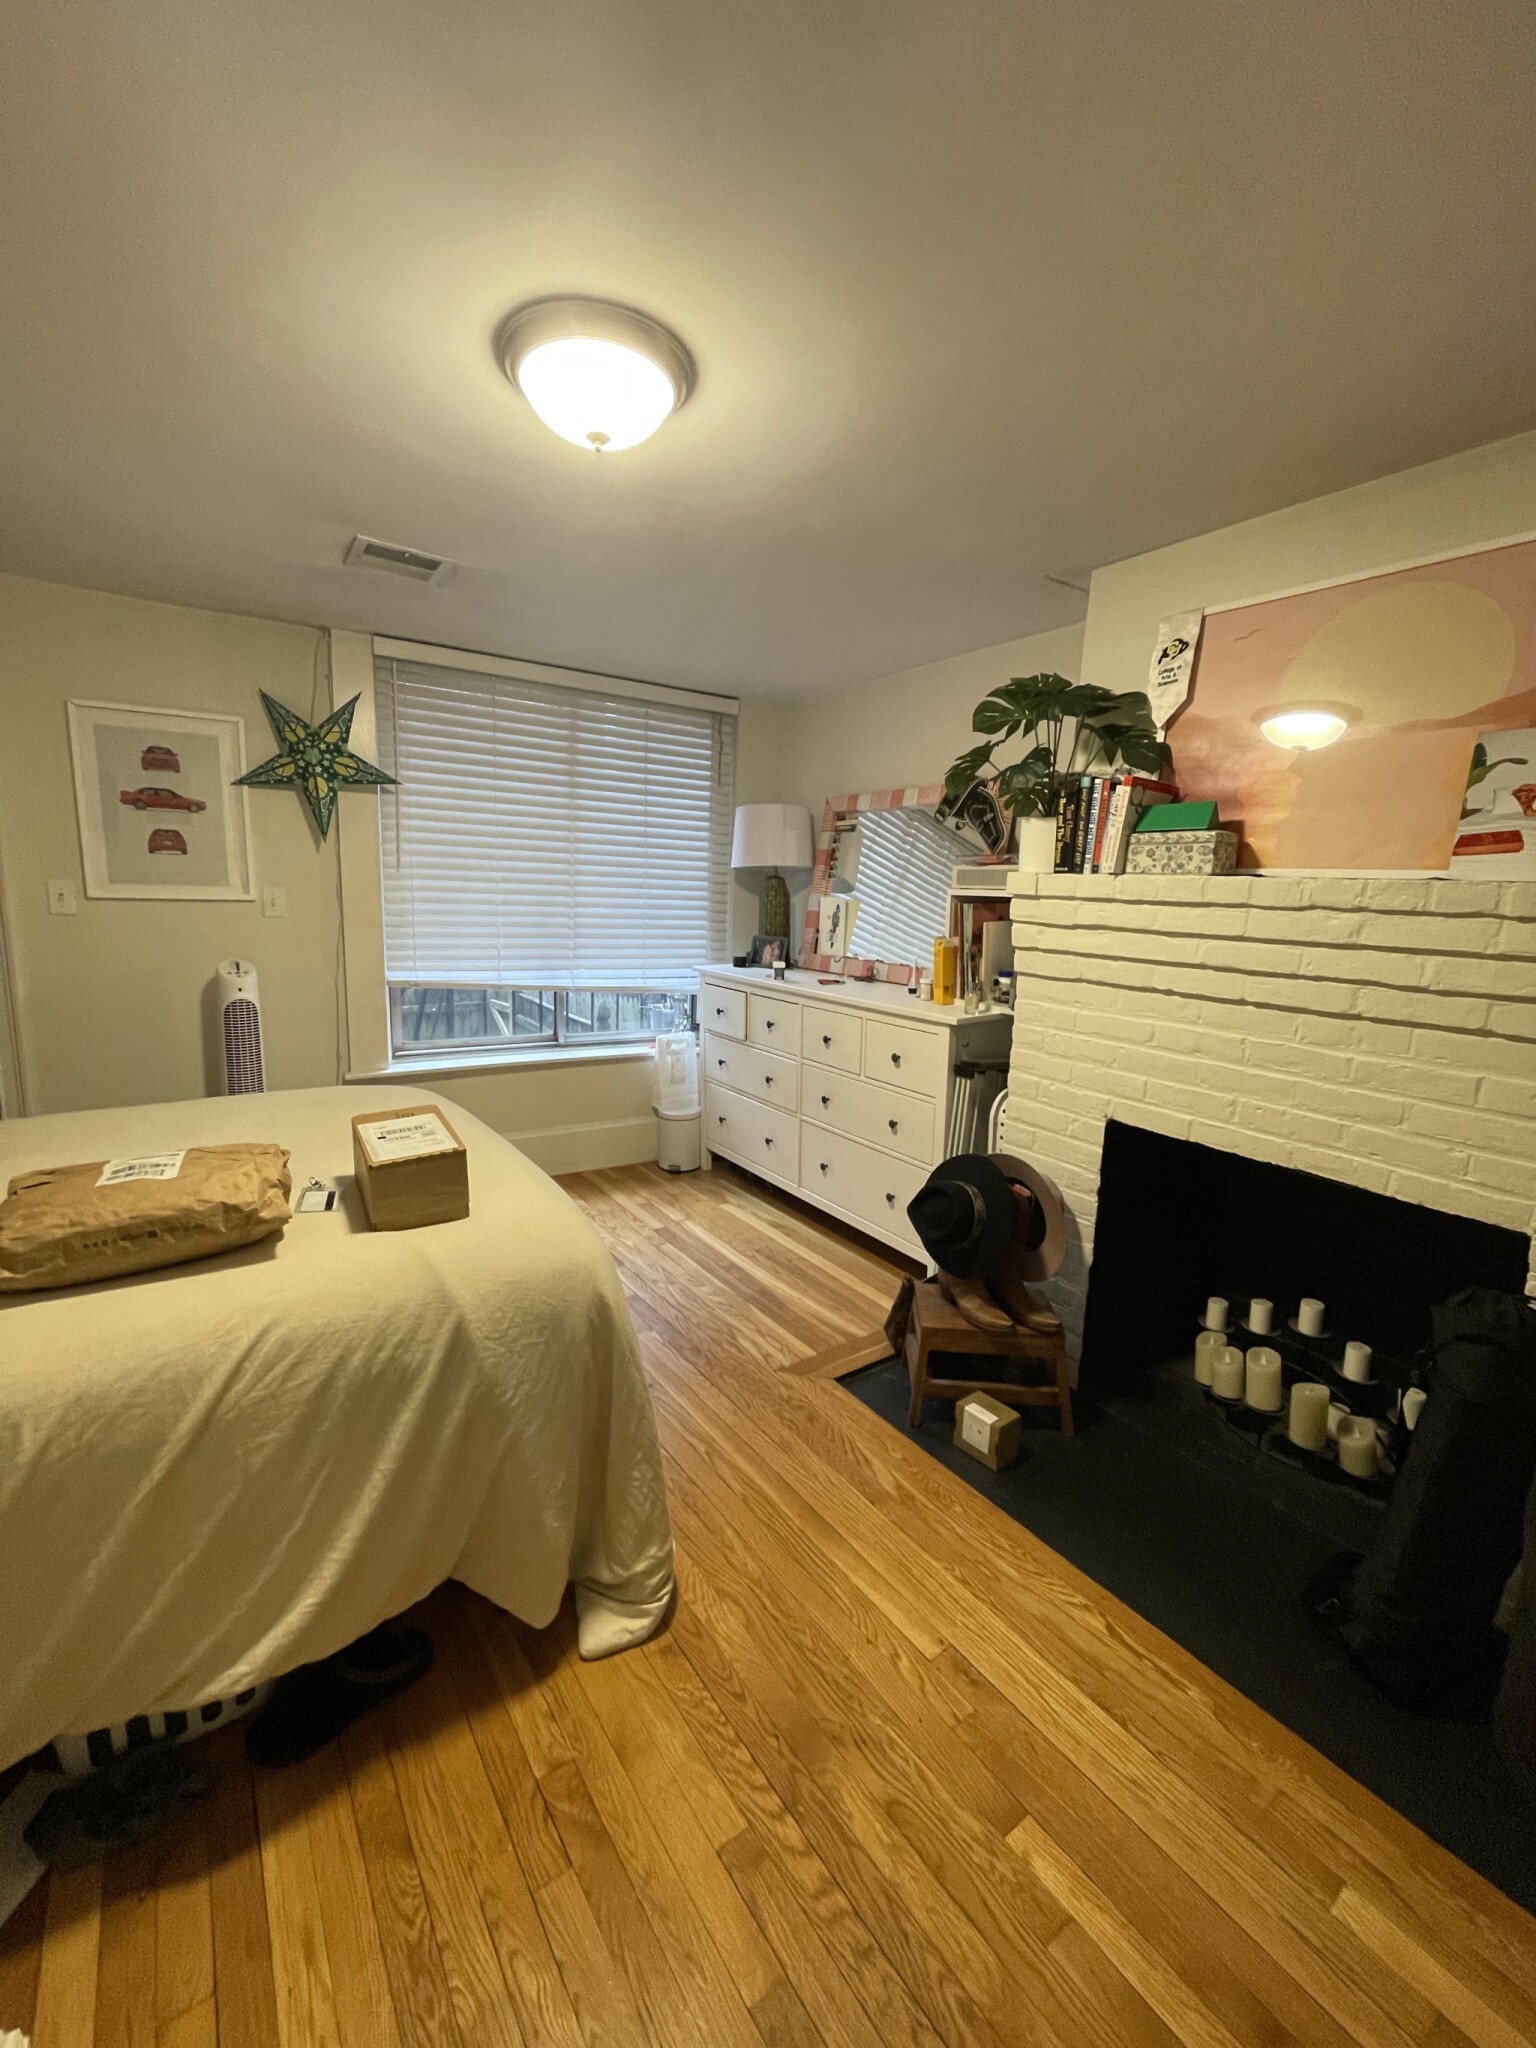 Photos of apartment on West Cedar St.,Boston MA 02114